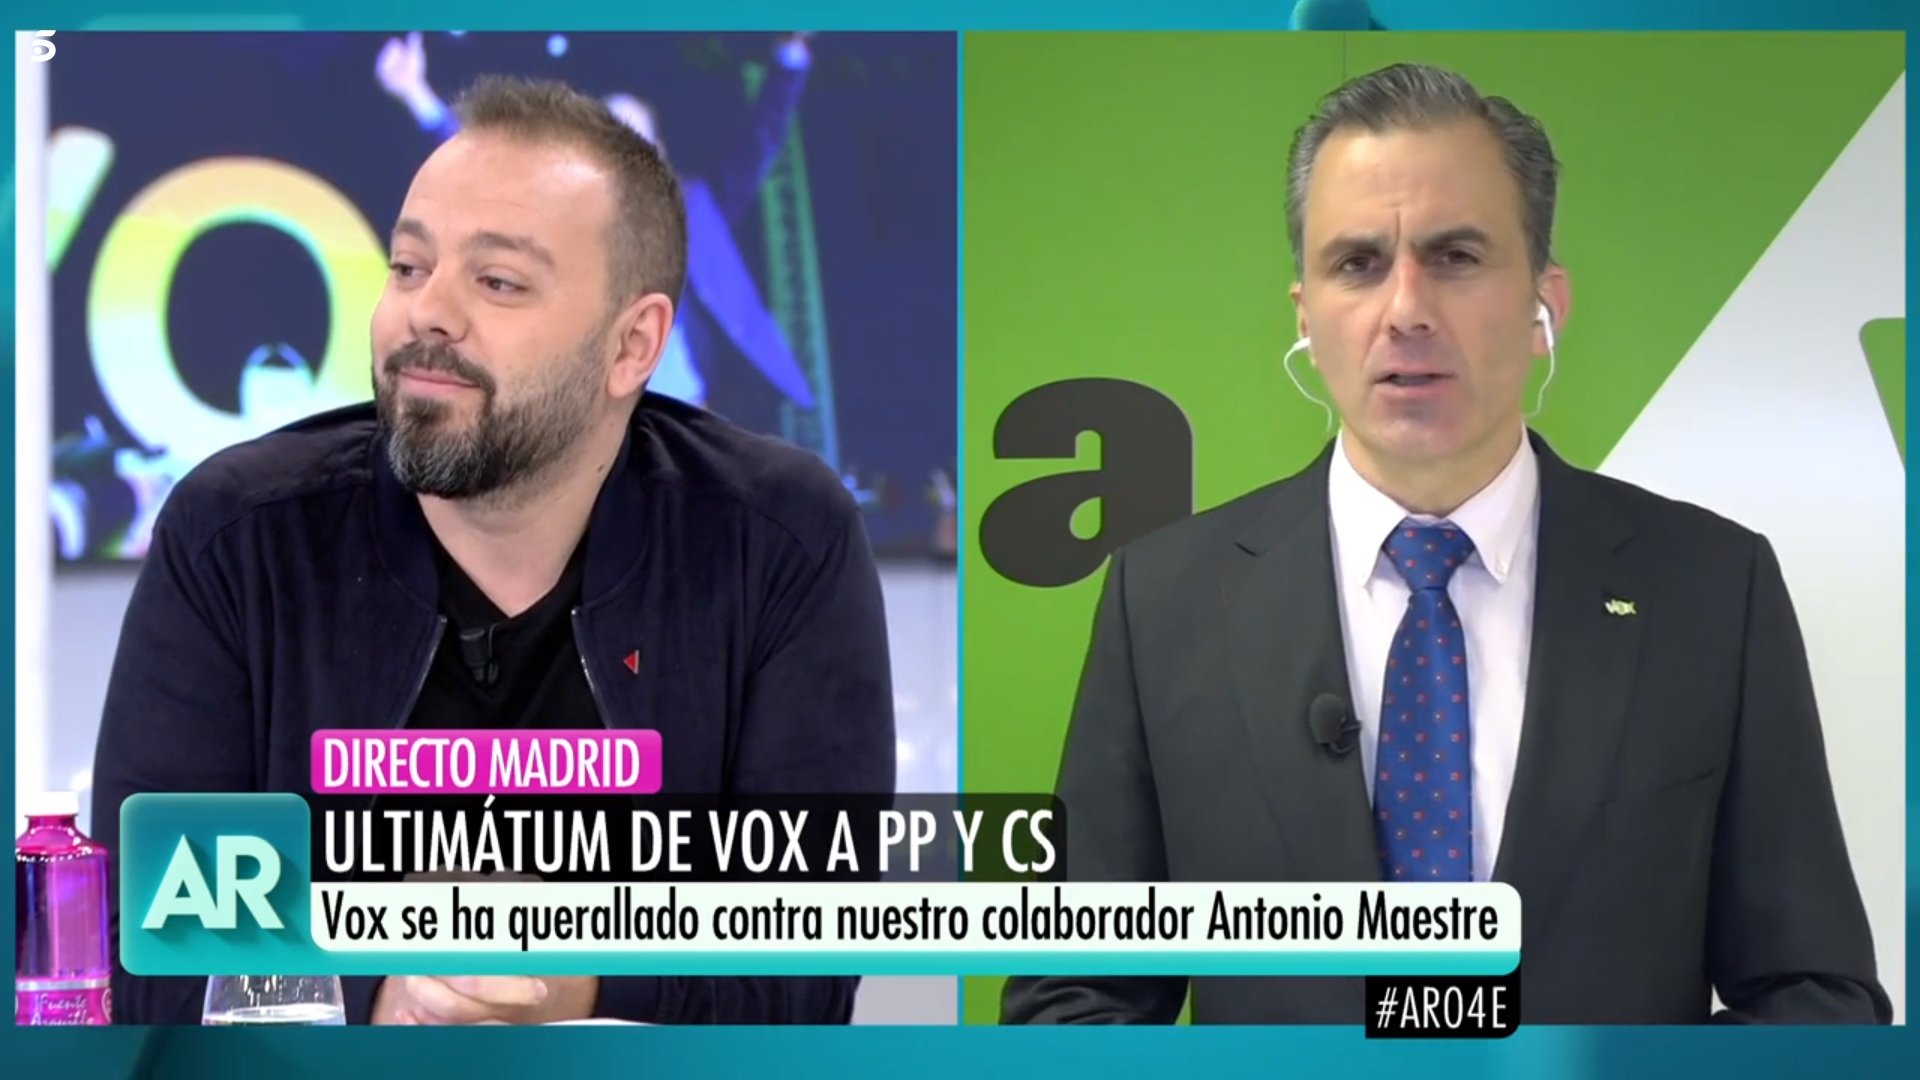 Tensa discussió entre Antonio Maestre i el 2 de Vox a 'Ana Rosa': “Presunto delincuente”